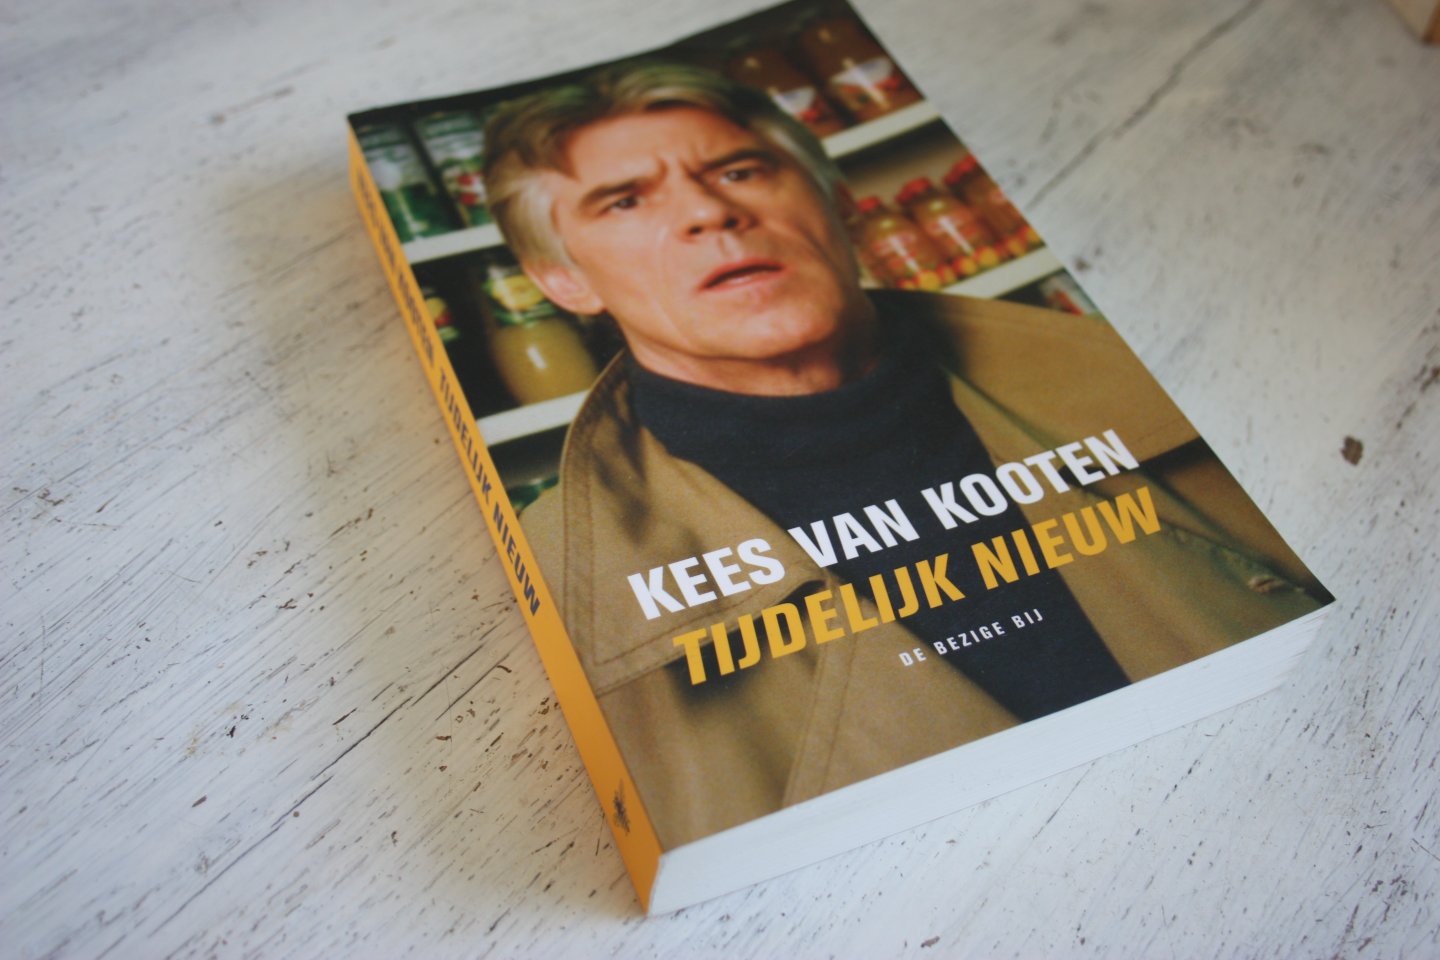 Kooten, Kees van - Kooten / Tijdelijk nieuw / vijftig tijdopnamen